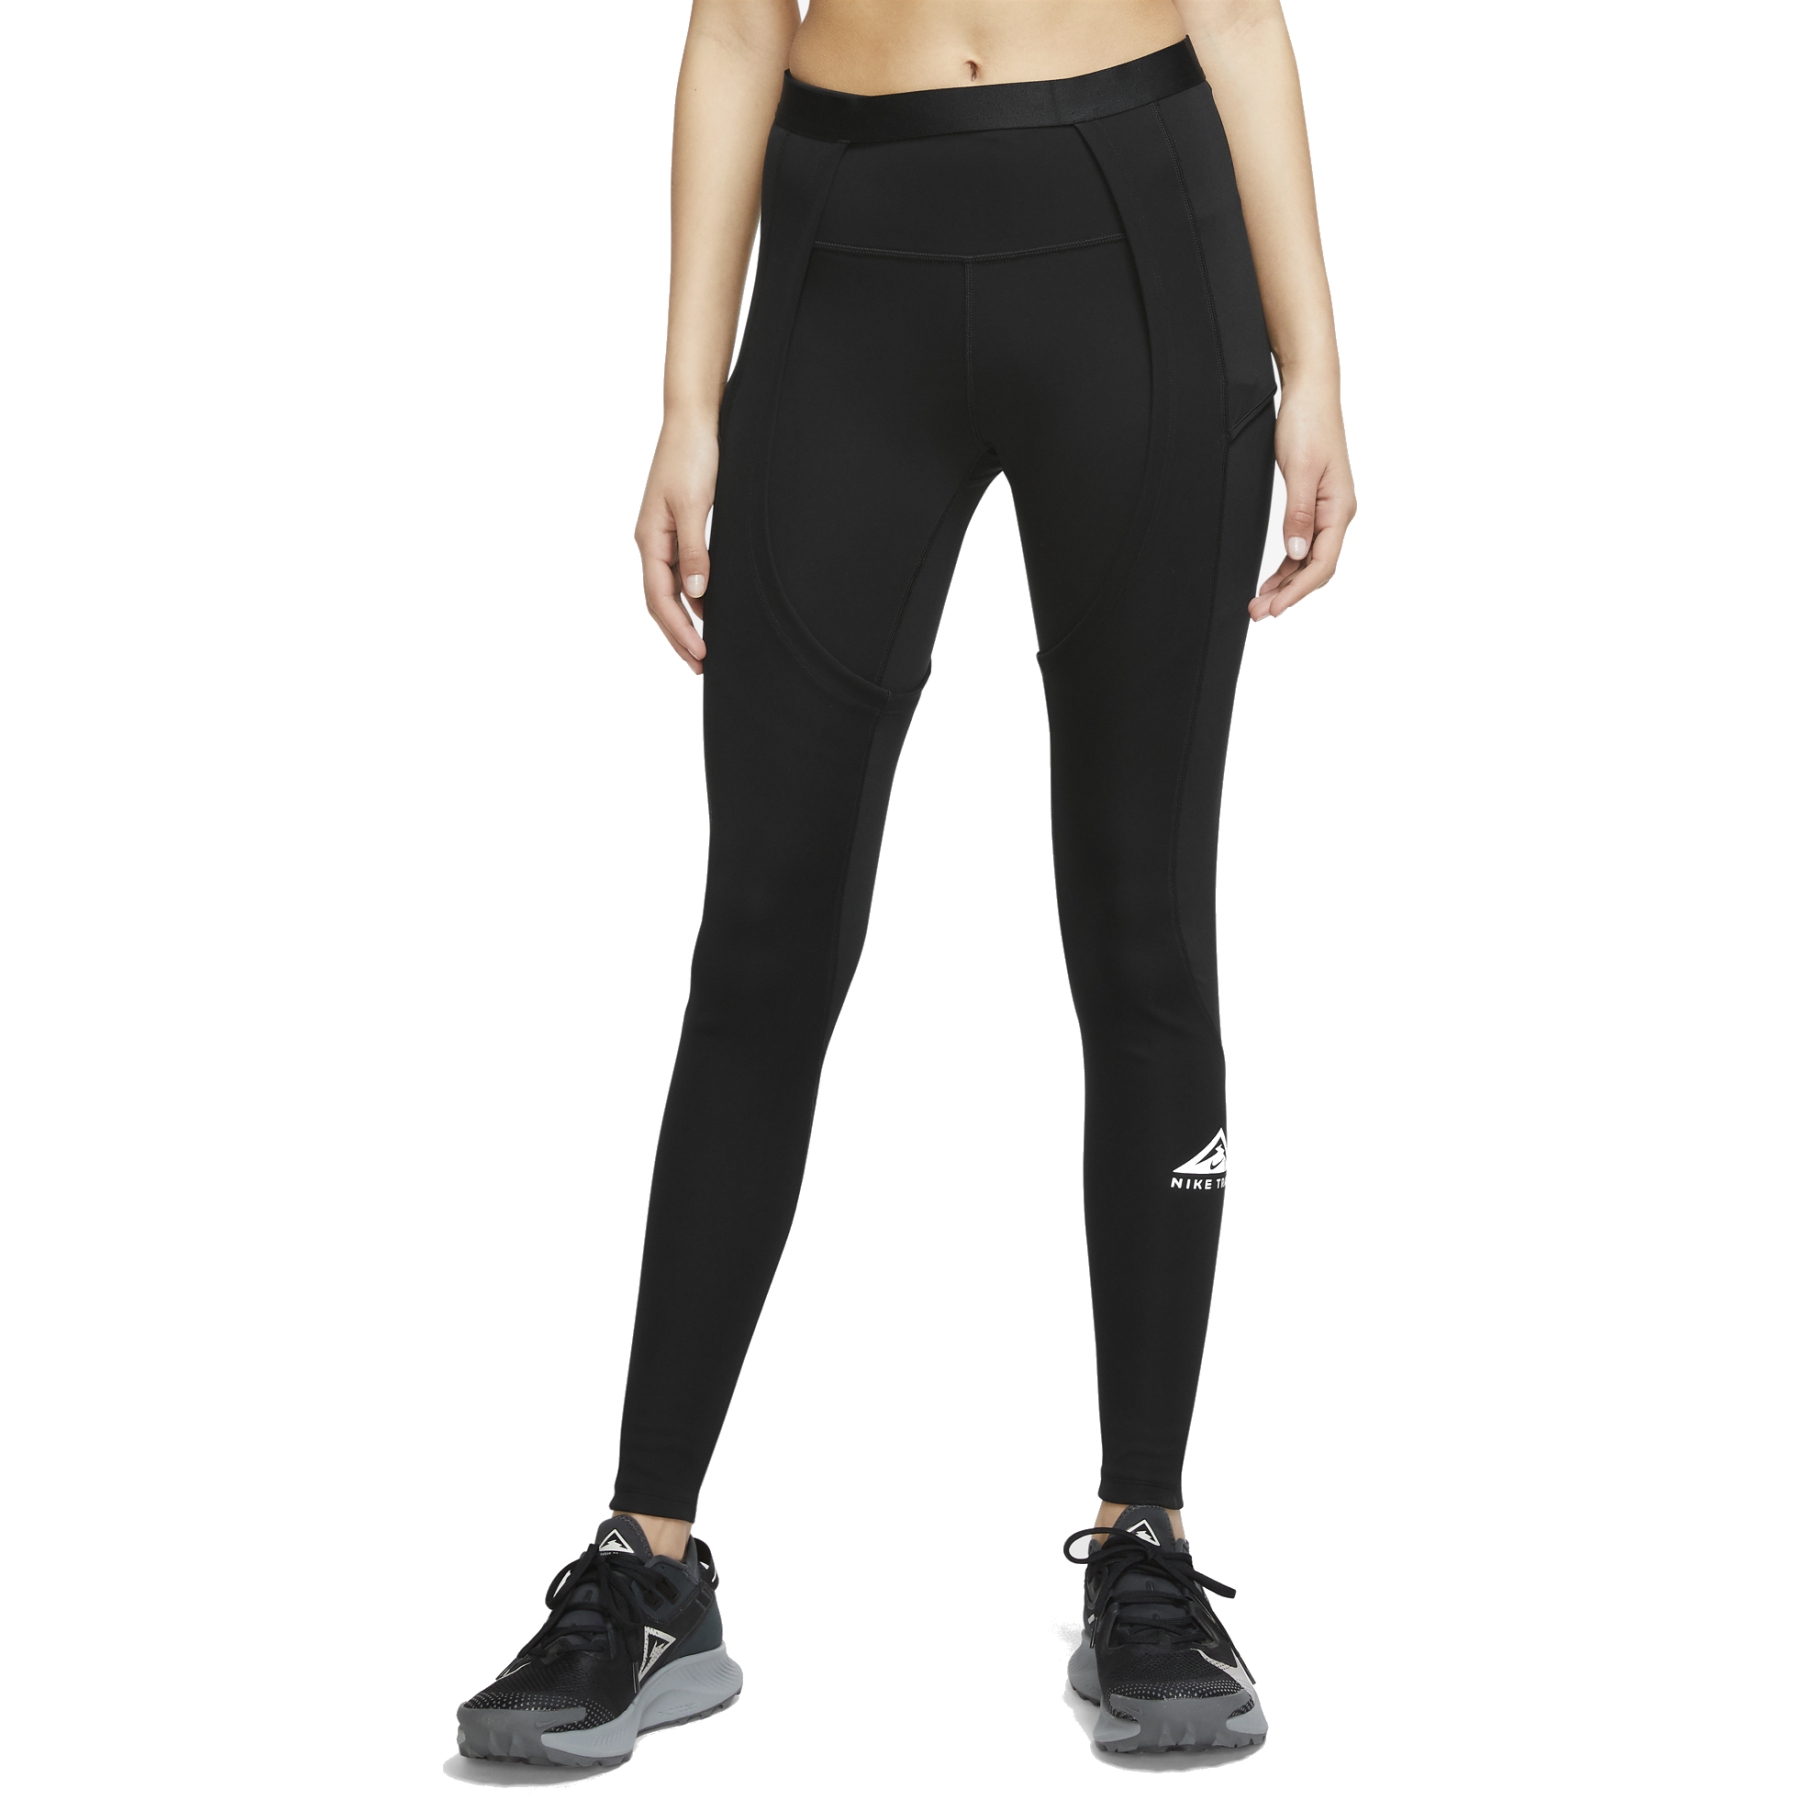 Nike Running epic luxe leggings in black